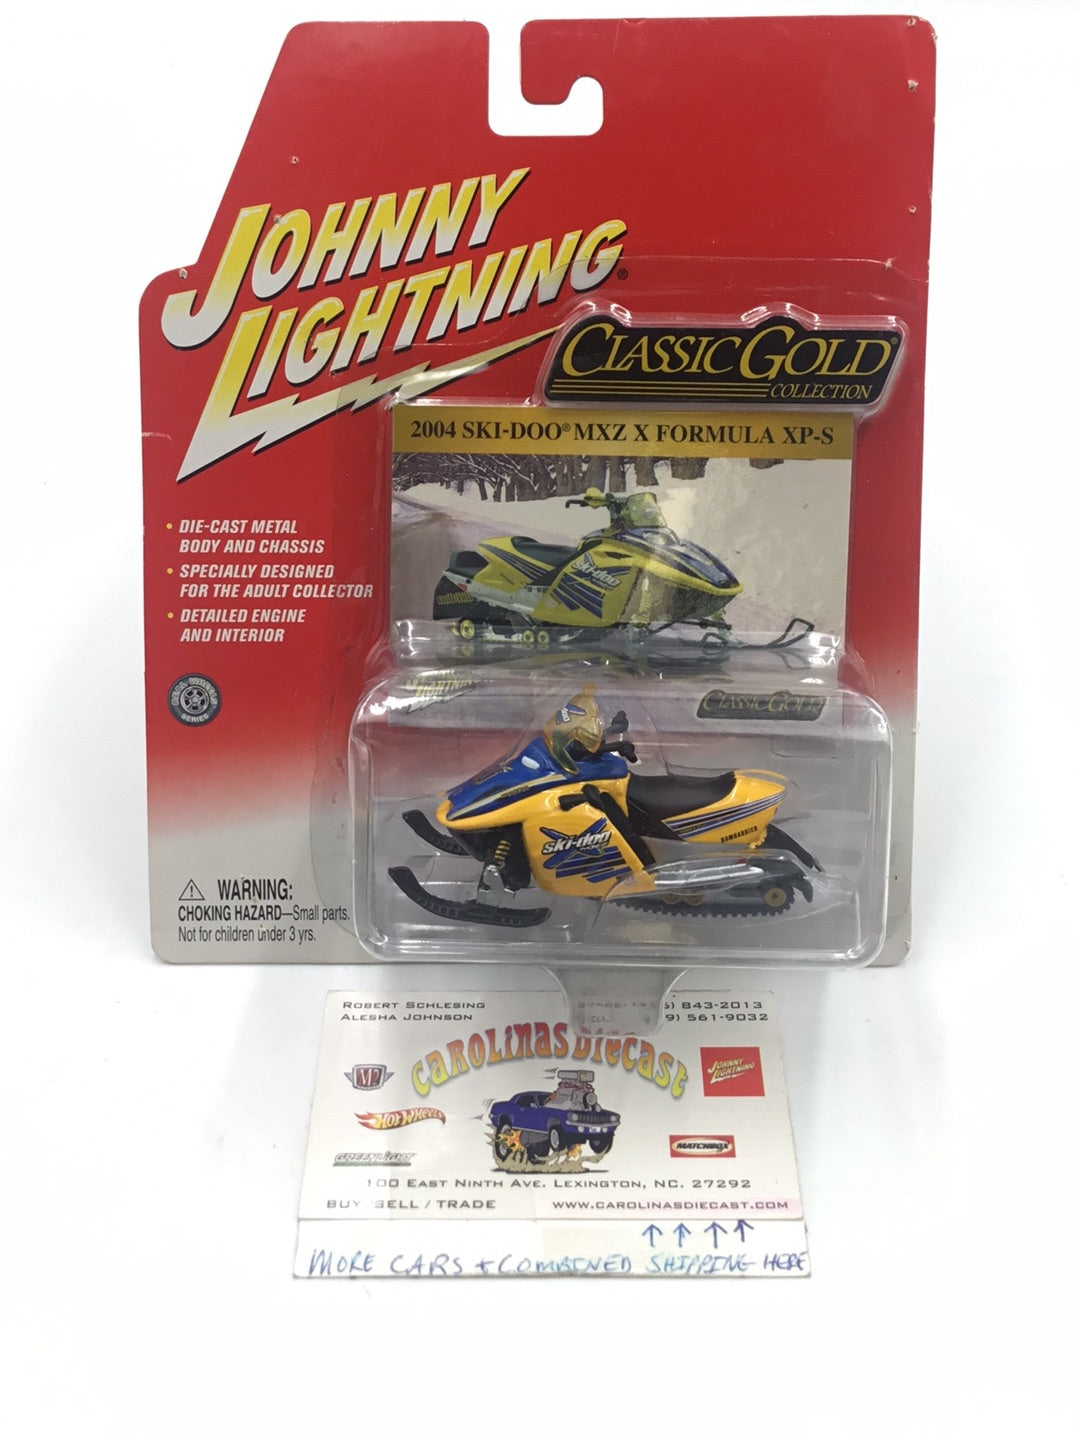 Johnny lightning Classic Gold 2004 Ski-Doo MXZ Formula XP-S OO3